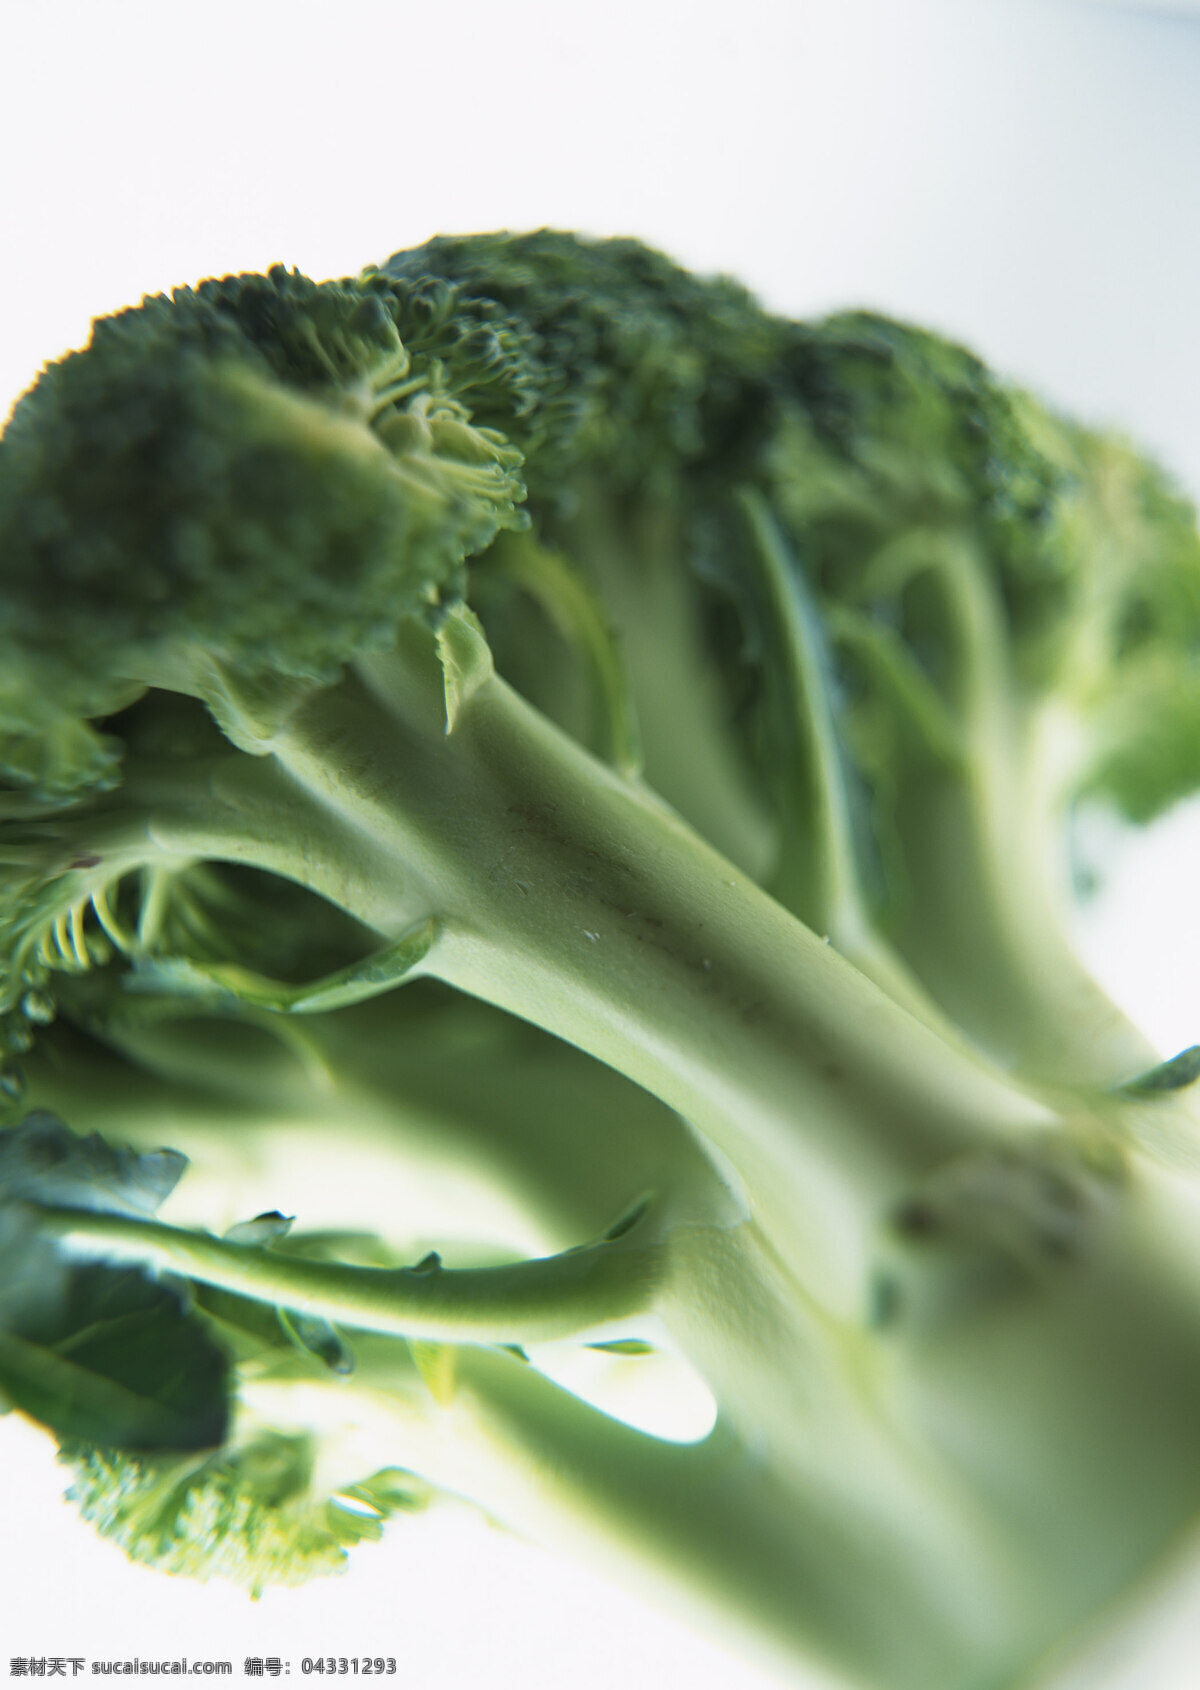 西兰花 新鲜蔬菜 花菜 农作物 绿色食品 摄影图 高清图片 蔬菜图片 餐饮美食